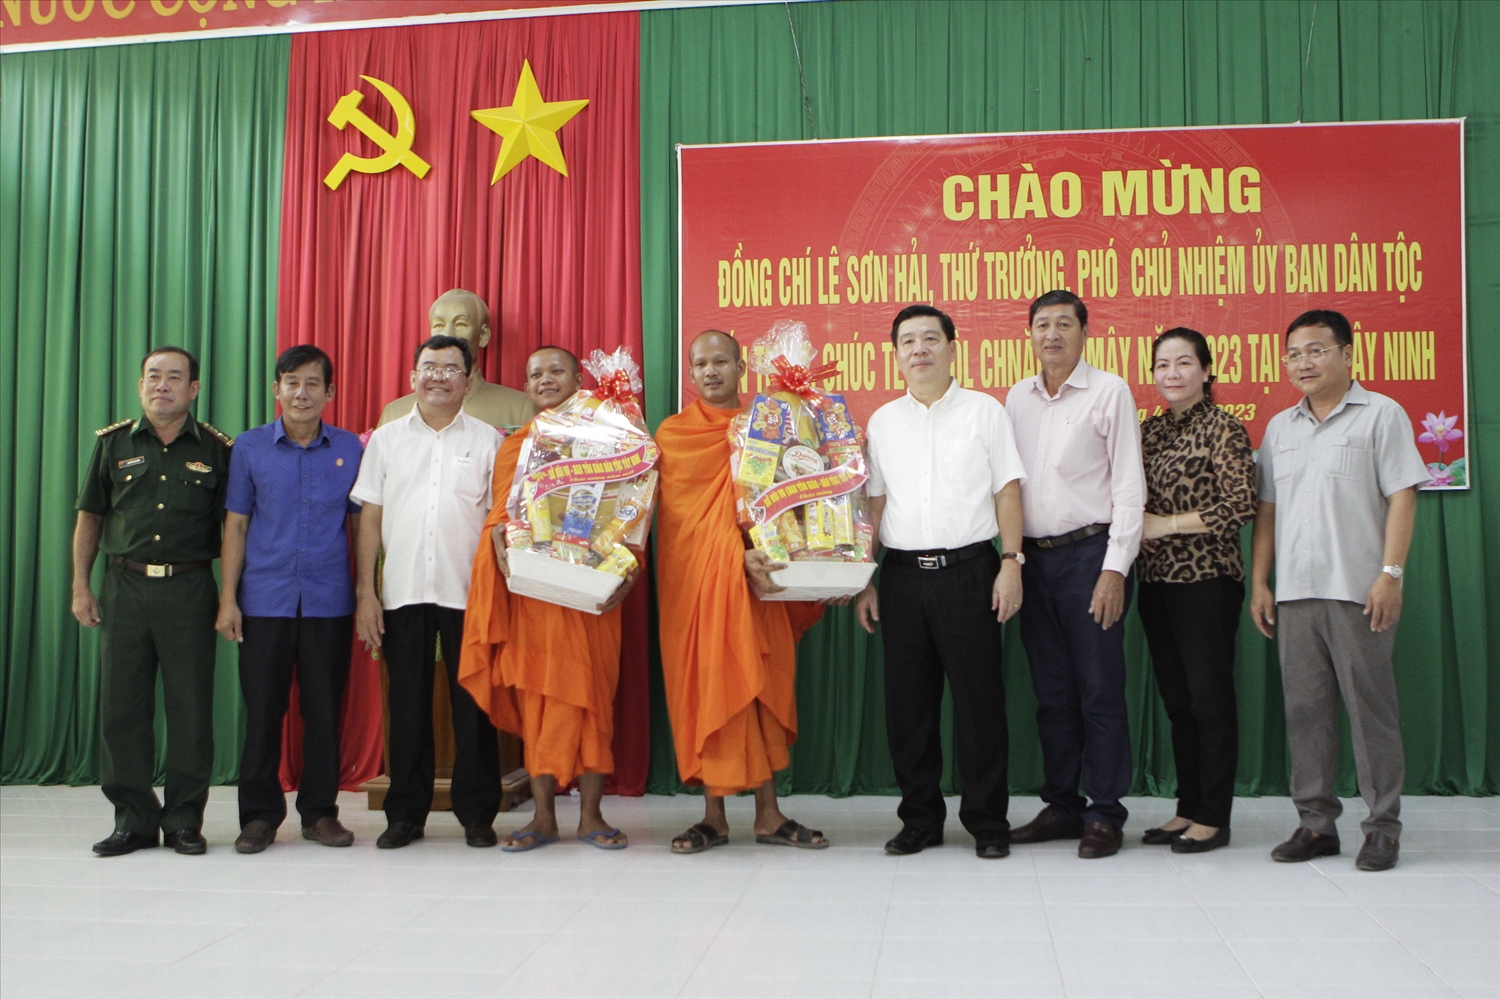 Thứ trưởng, Phó Chủ nhiệm UBDT Lê Sơn Hải và Đoàn công tác tặng quà đại diện các chùa Khmer tại Tây Ninh 